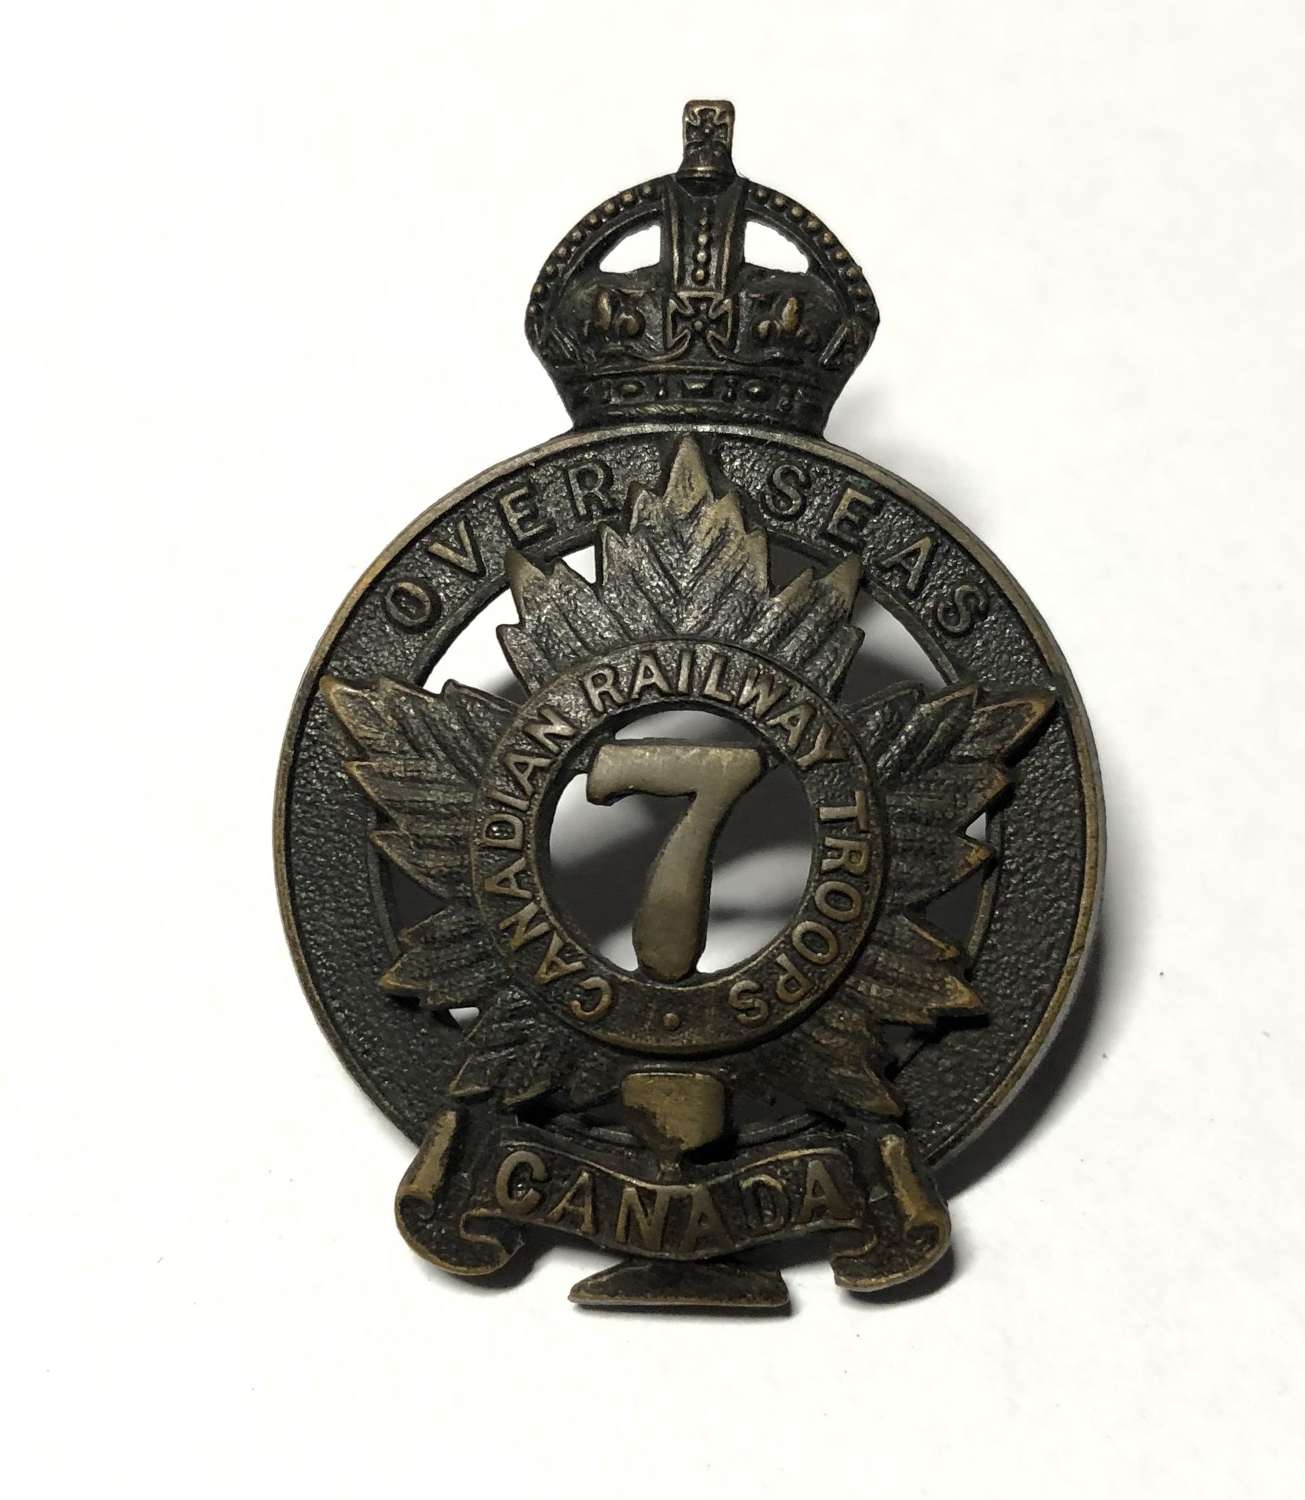 7th Canadian Railway Troops WW1 CEF cap badge by Gaunt